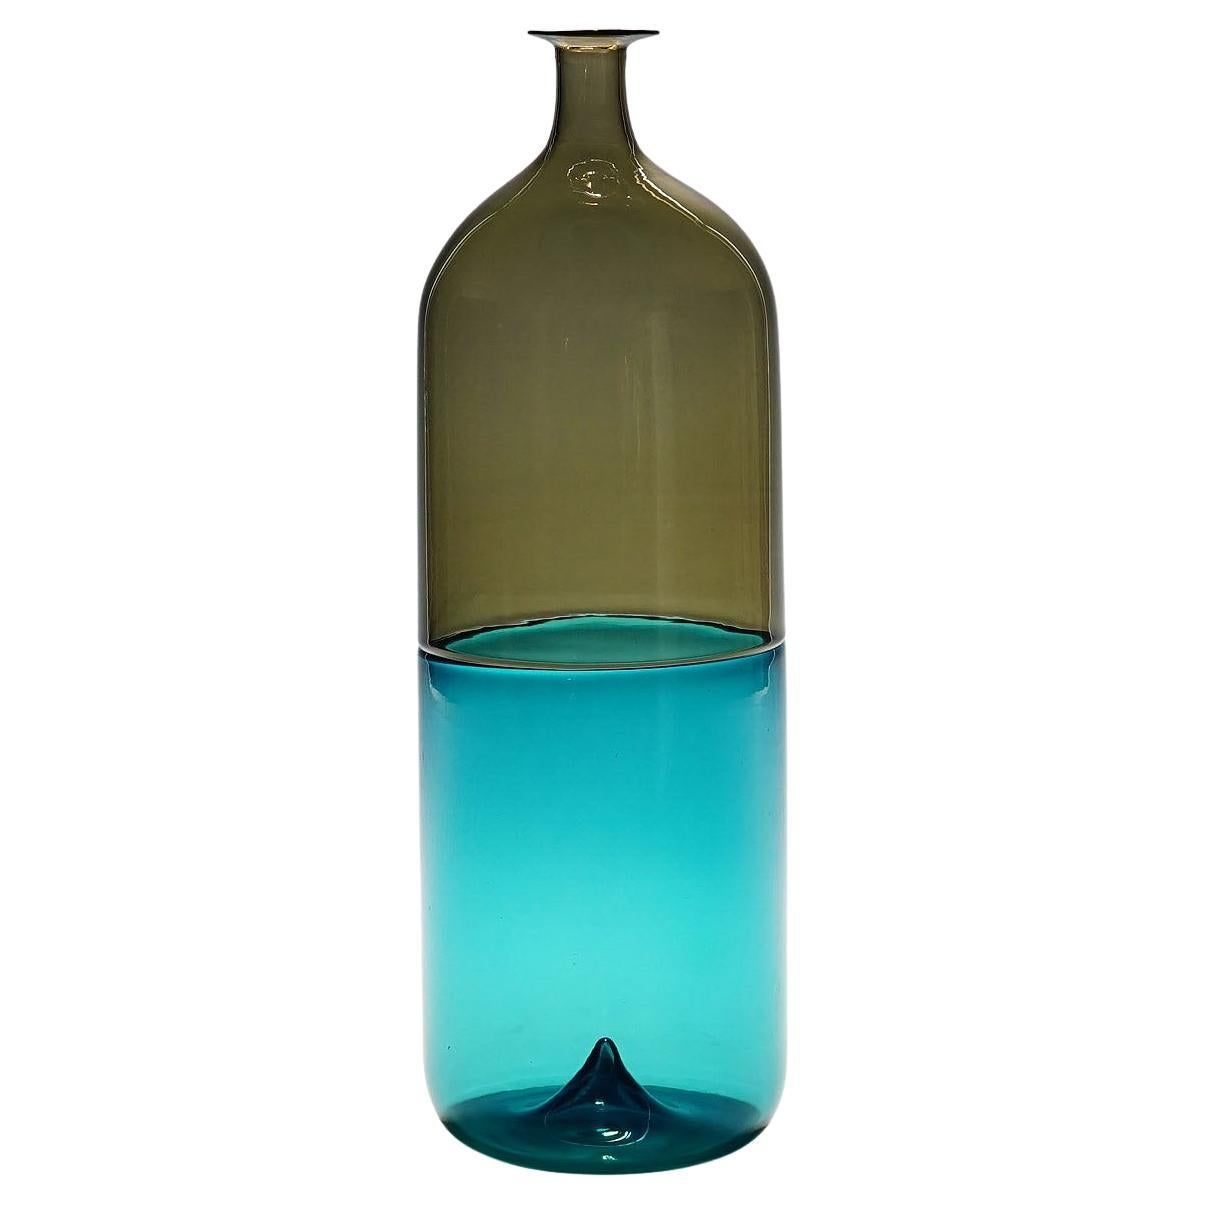 Venini Art Glass Vase 'Bolle' by Tapio Wirkkala for Venini, Murano, 1966 For Sale